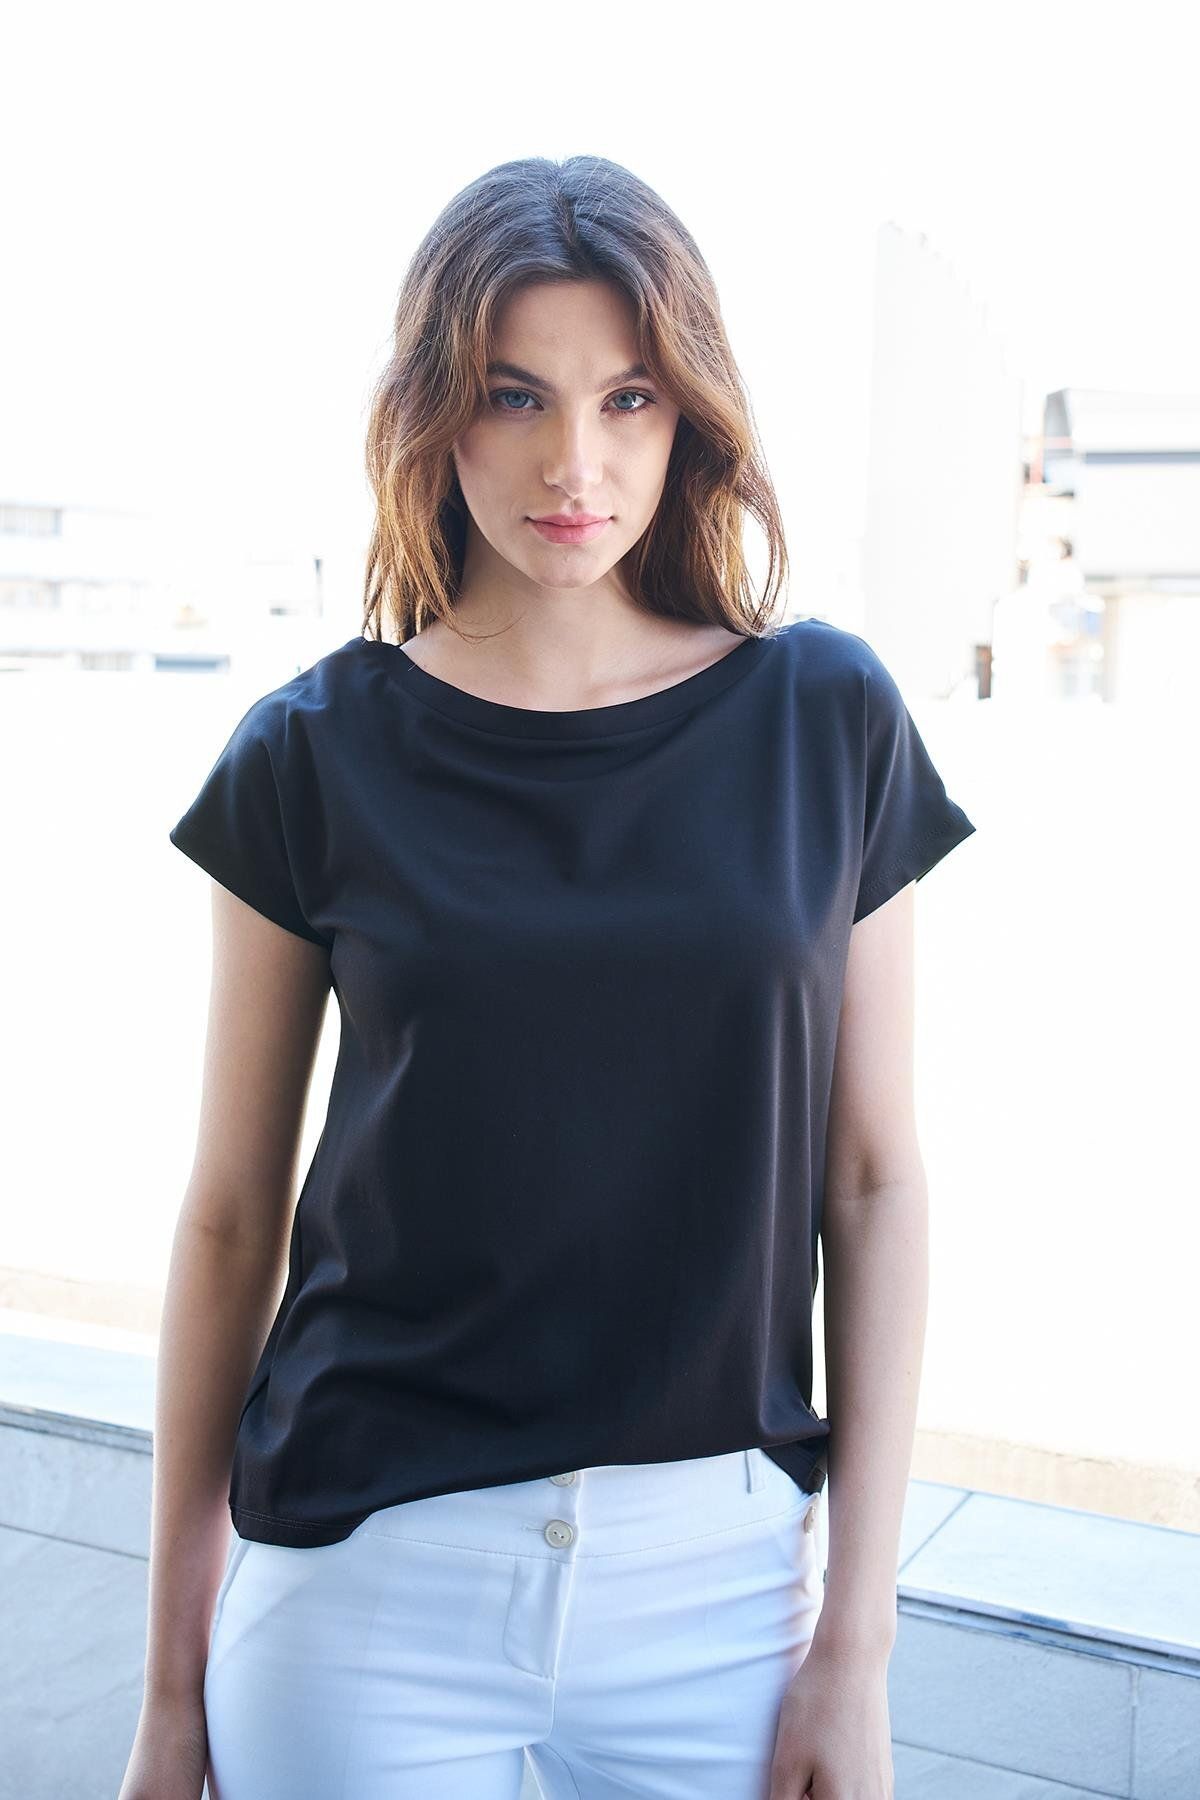 Jument Kadın Kayık Yaka Düşük Omuzlu Kırışmaz Span Karışımlı Şık T-shirt Bluz-Siyah